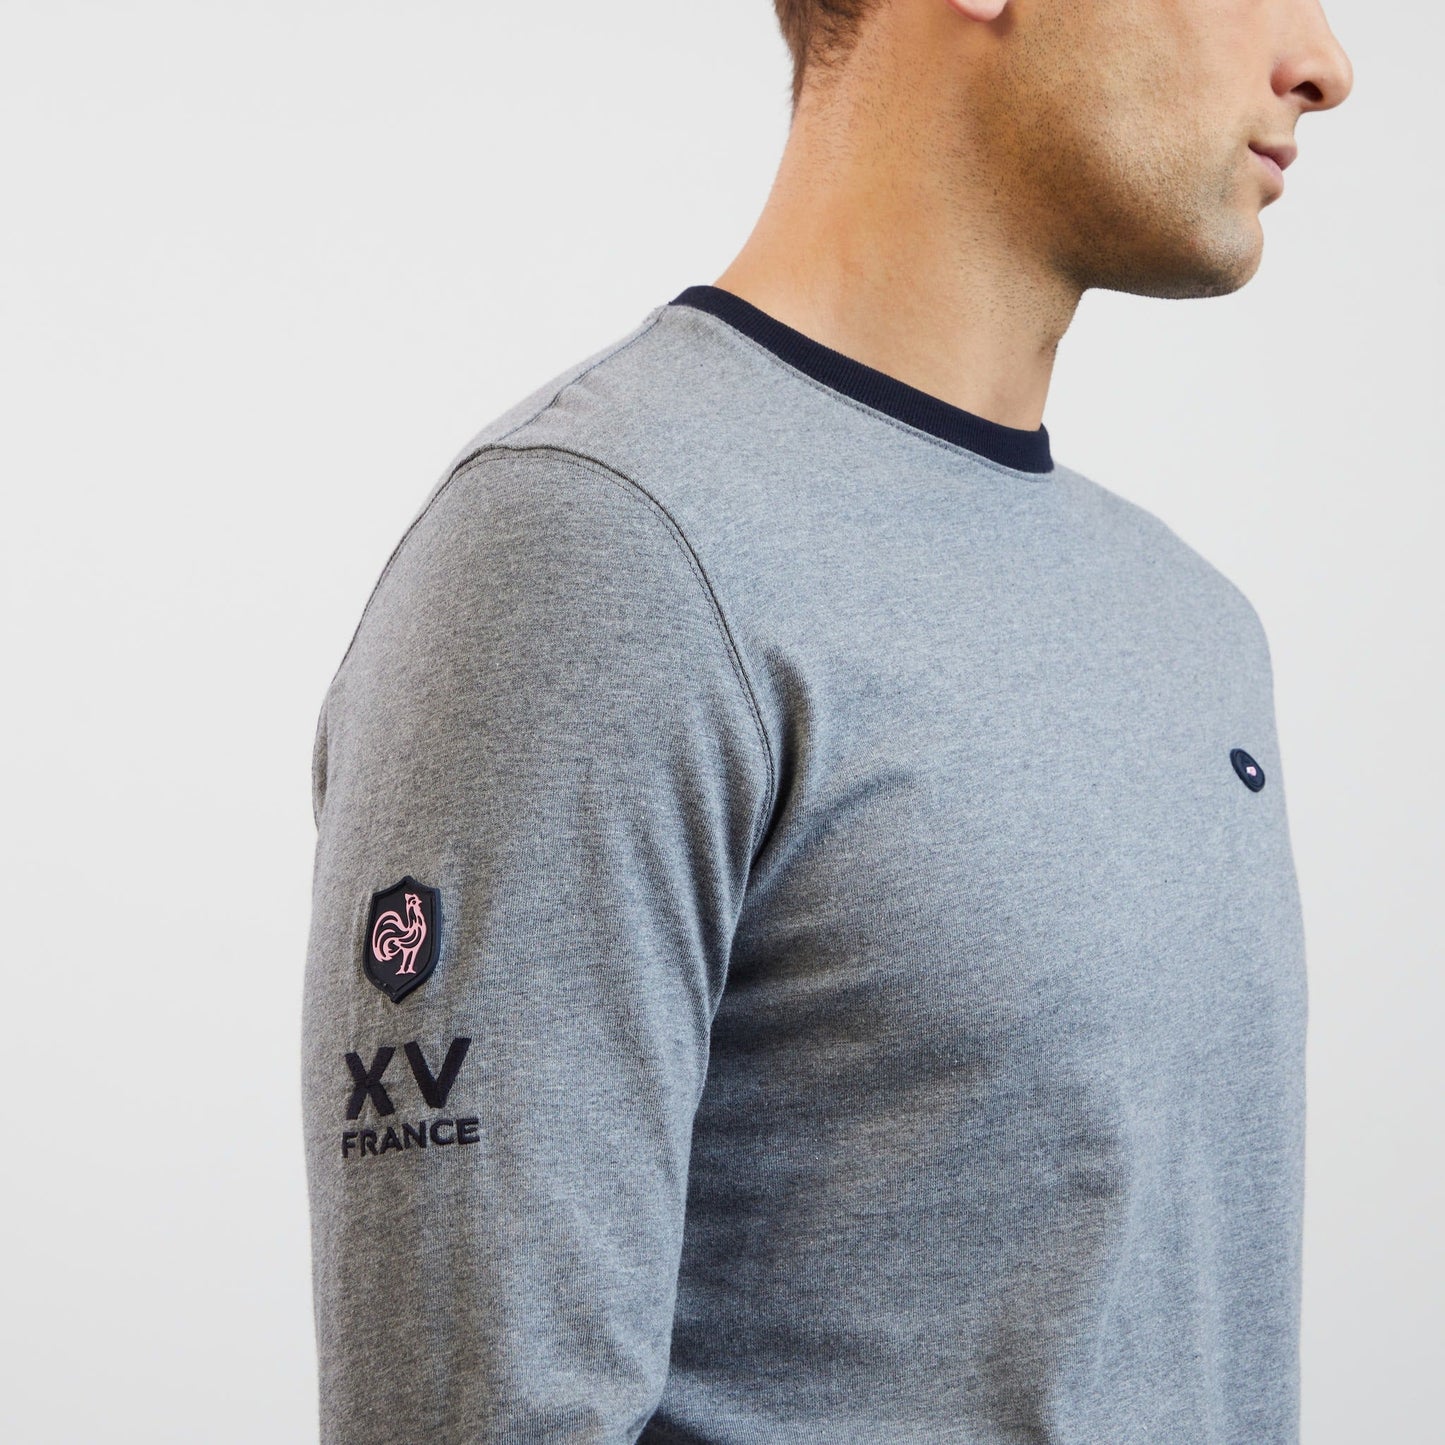 T-shirt gris manches longues détails broderies XV de France - Image 7